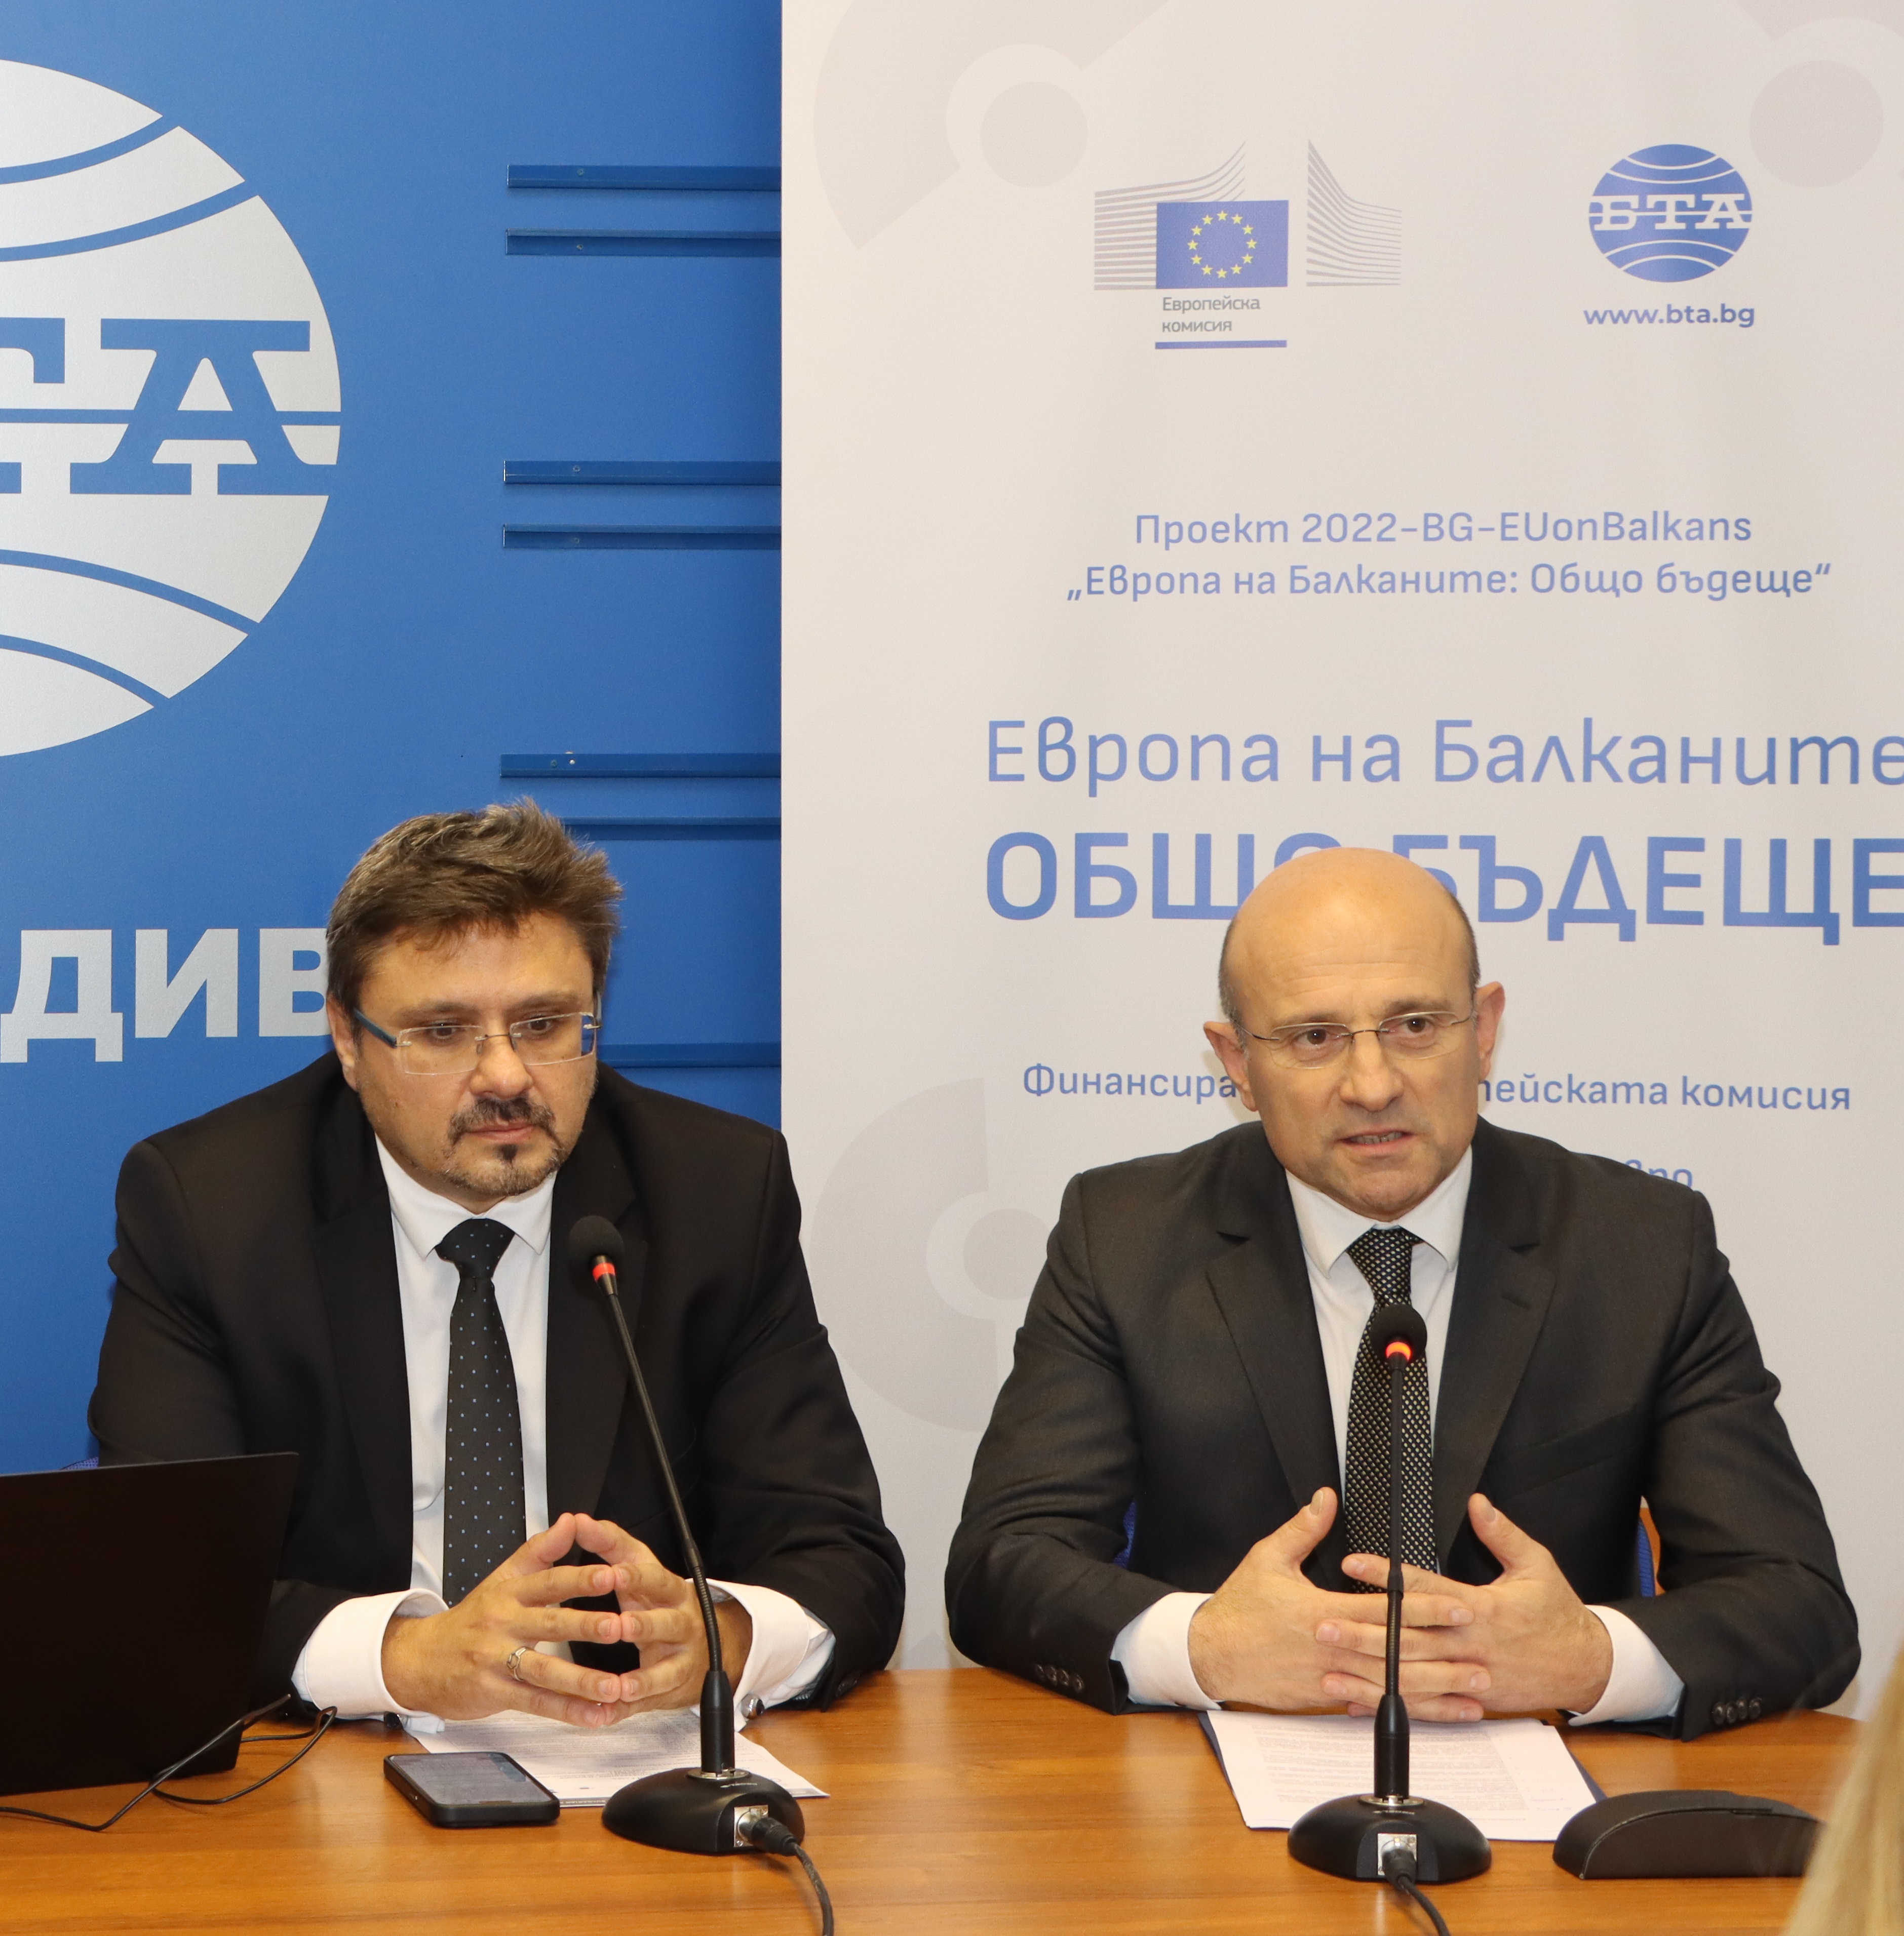  Заместник-министър Мартин Дановски: Около 33 млрд. лева европейски средства е оползотворила България от кохезионните фондове на ЕС до 2020 година